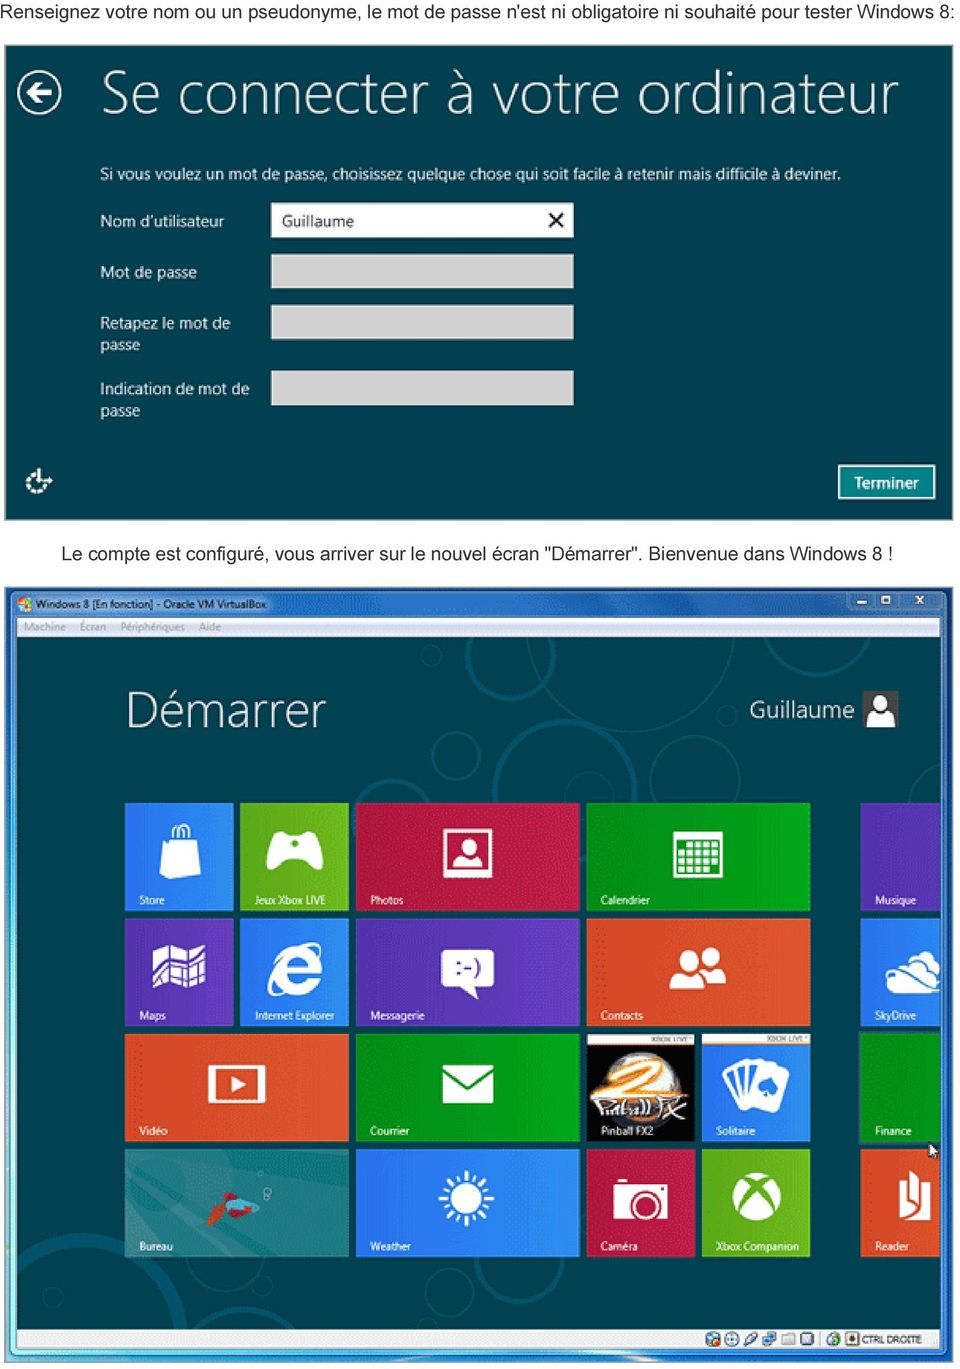 Windows 8: Le compte est configuré, vous arriver